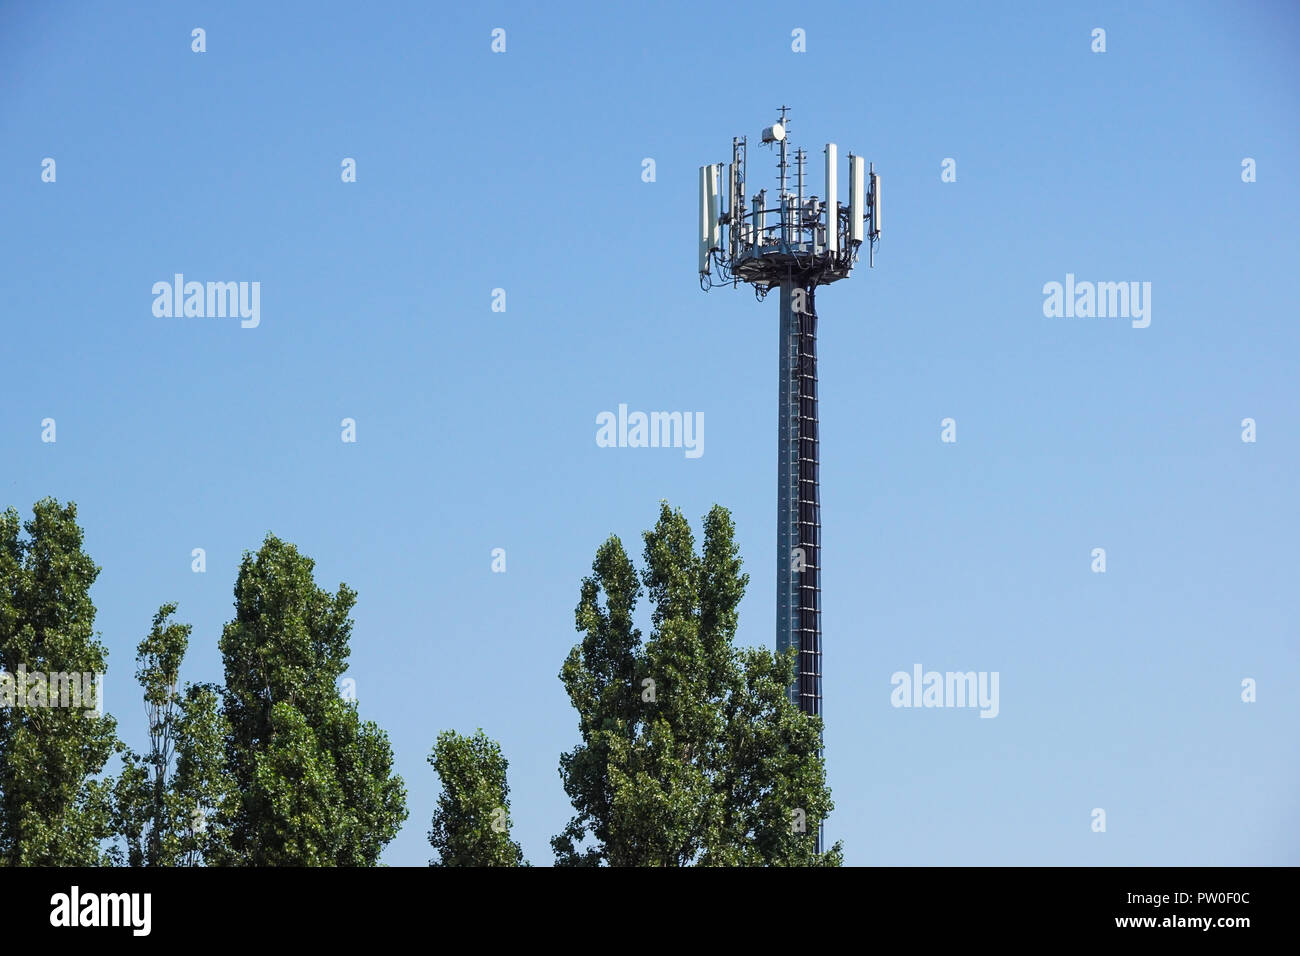 Silhouette d'antennes de télévision un mât de télécommunication crammer gsm Banque D'Images